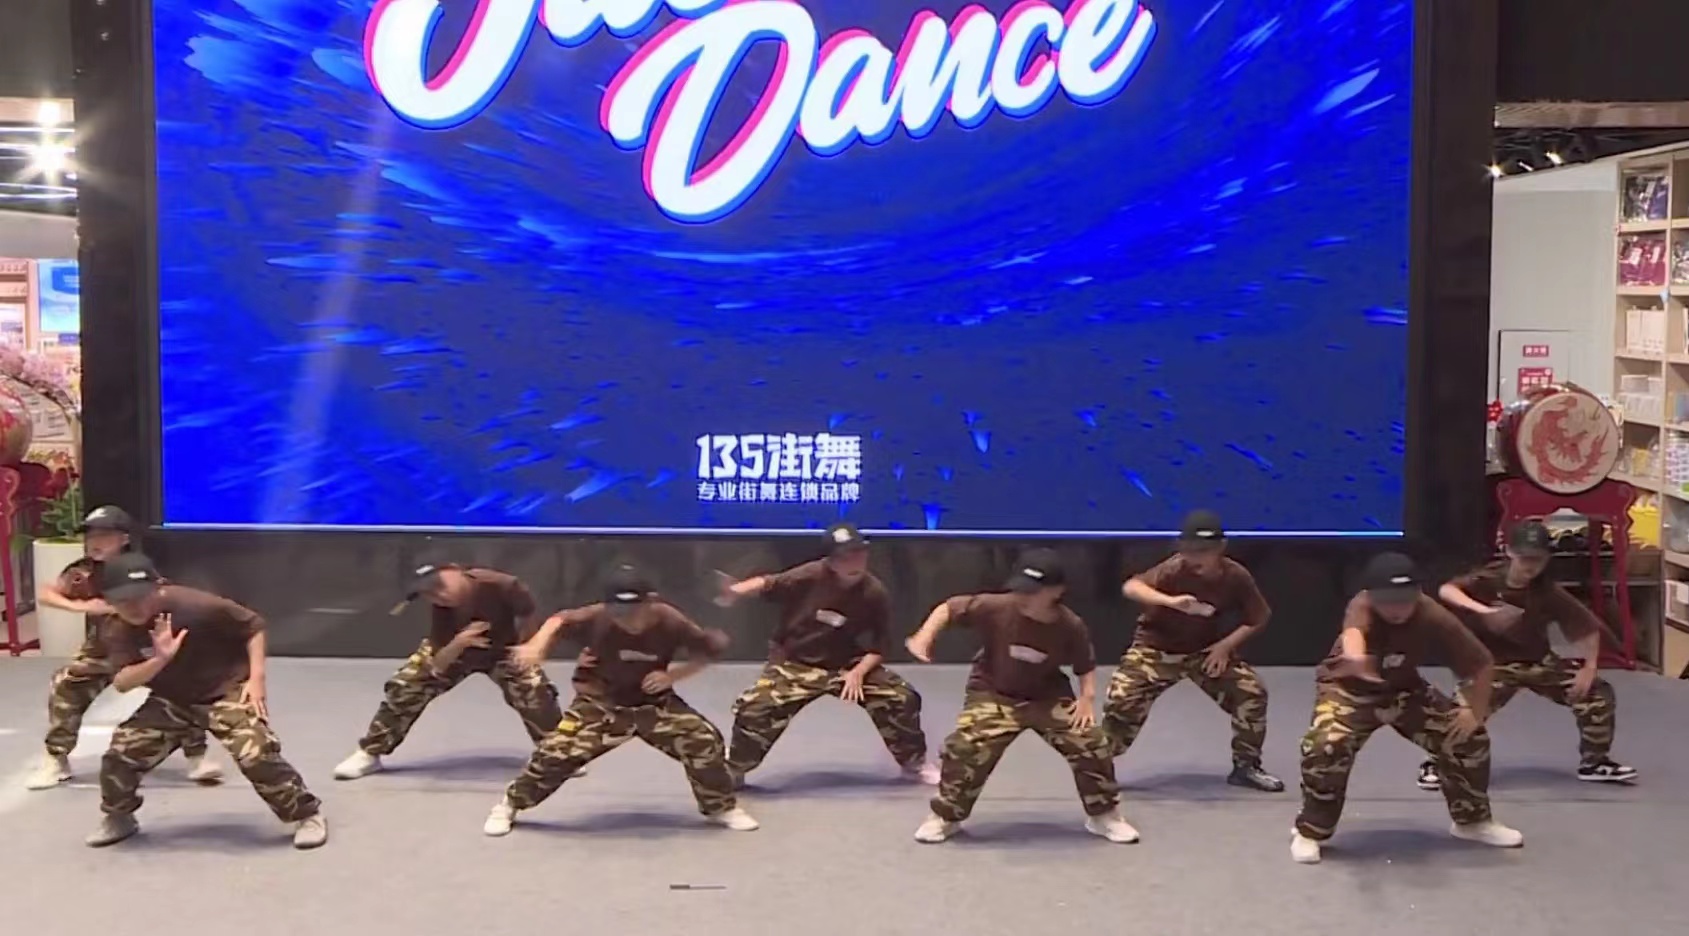 < 문화제를 축하하기 위한 기념 공연, 스트리트 단체 댄스를 열정적으로 선보인 초등학생들 - 출처: 통신원 촬영 >